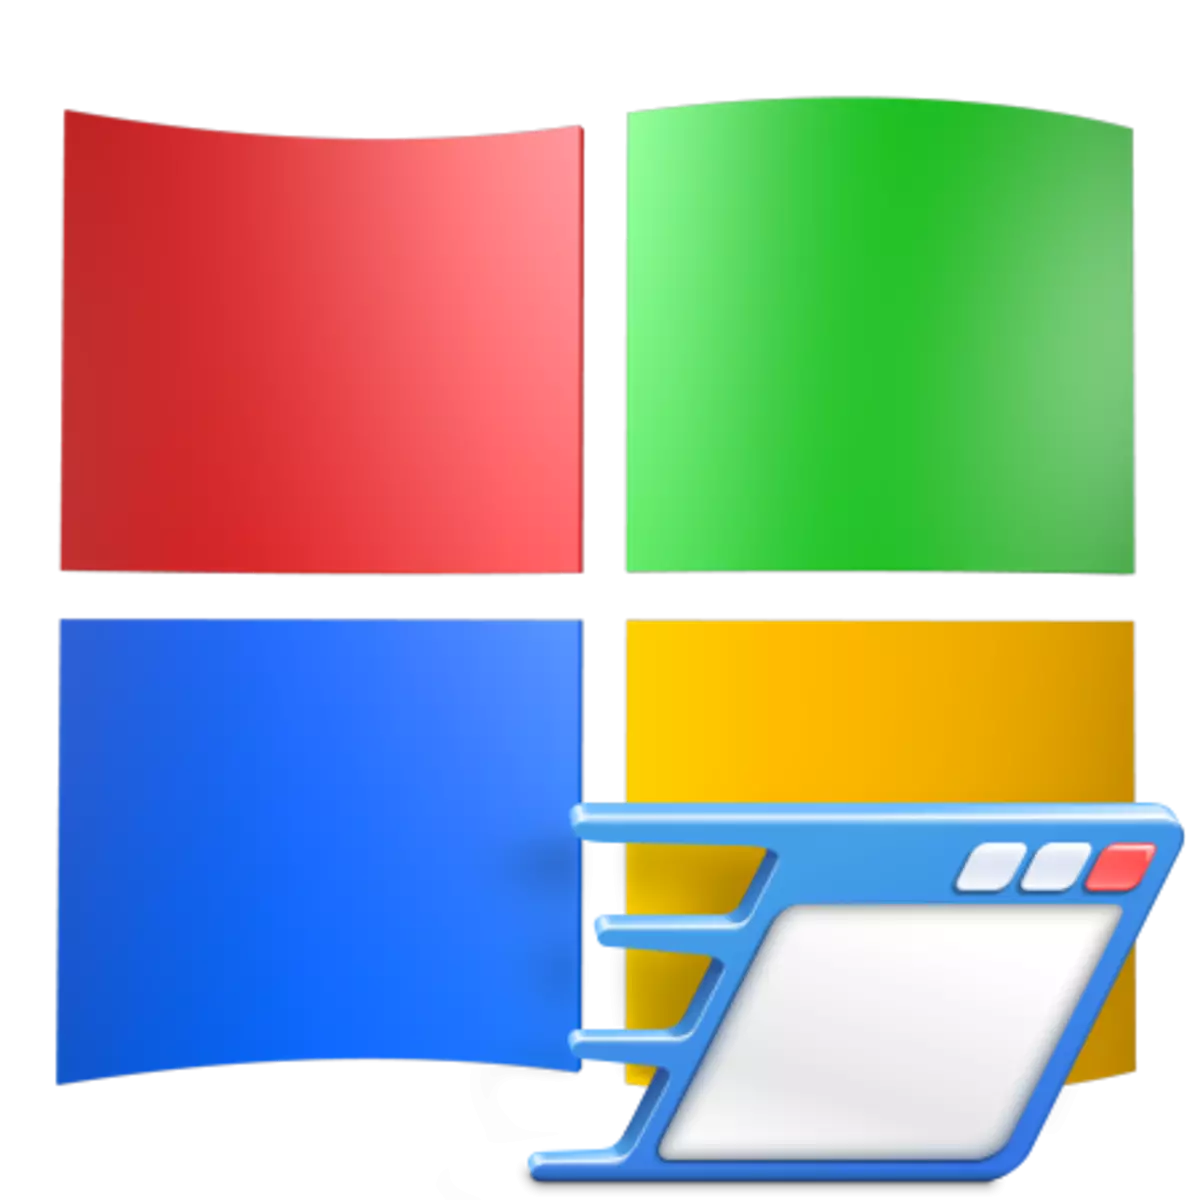 Ahoana ny fomba hanovana ny programa fanombohana ao amin'ny Windows XP